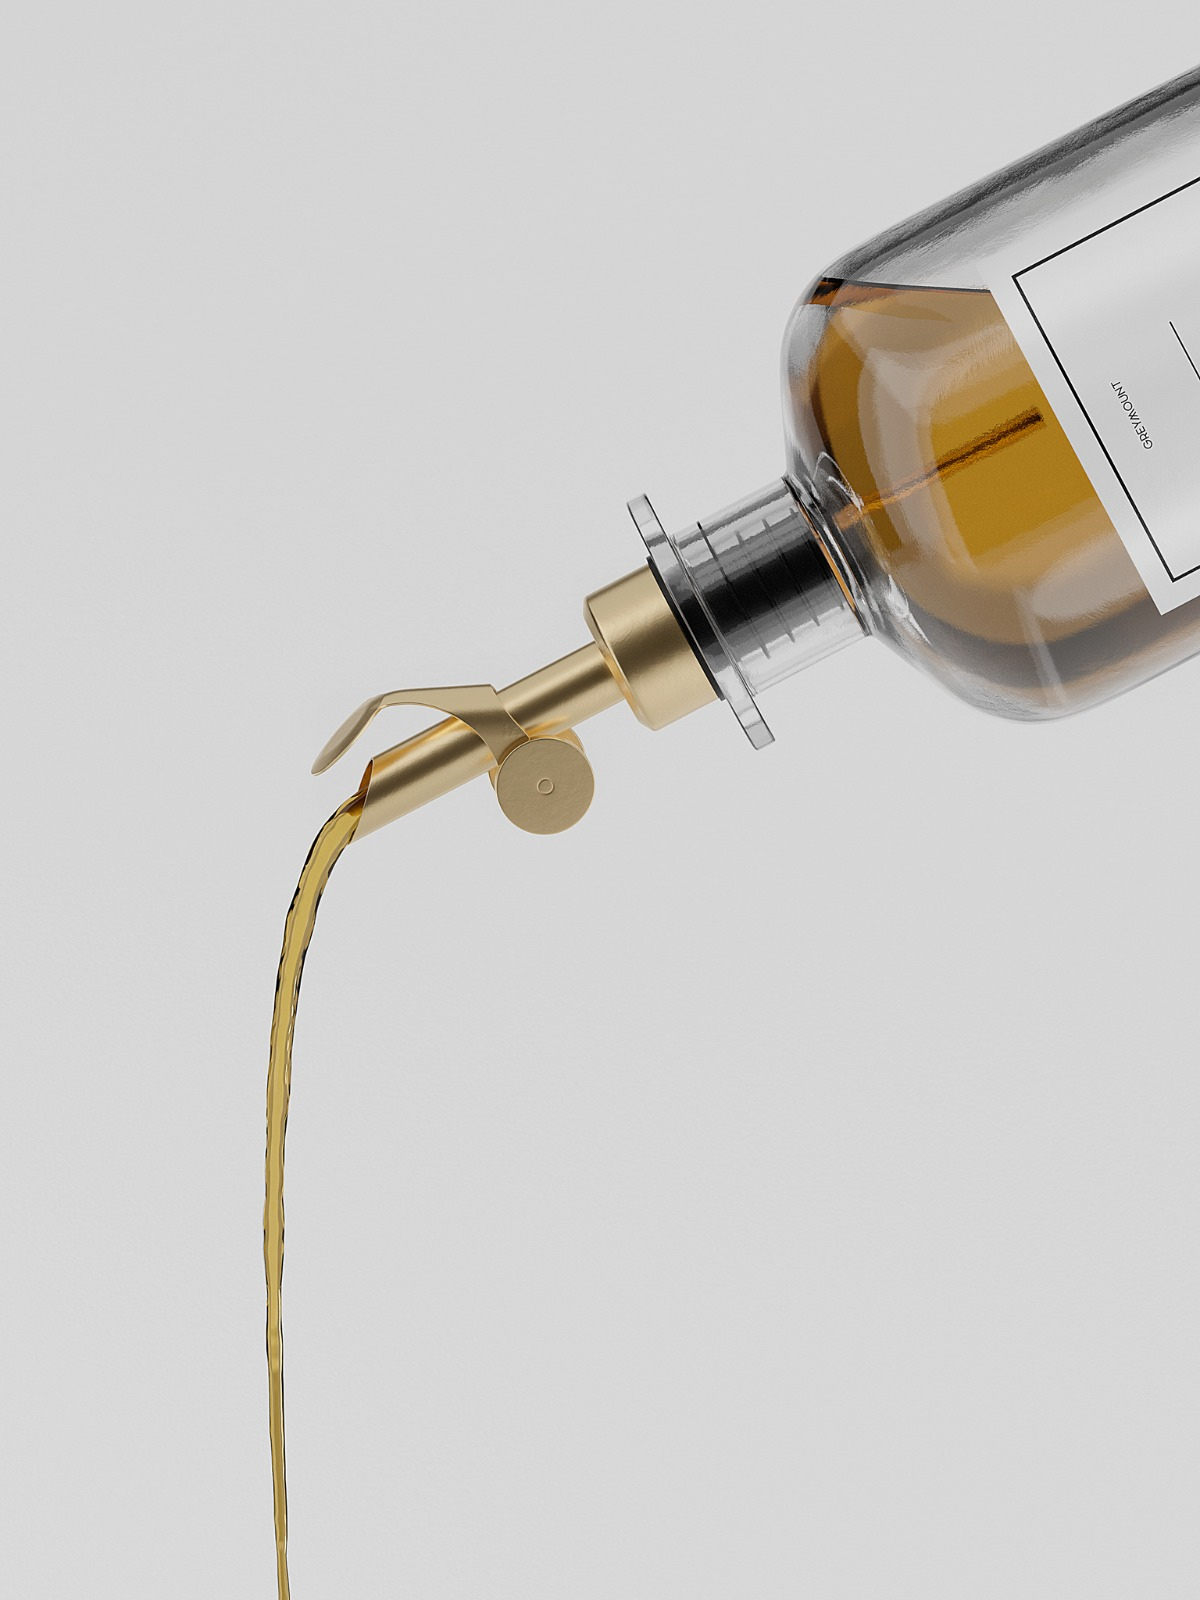 Ölflasche aus Glas mit goldenem Ausgießer